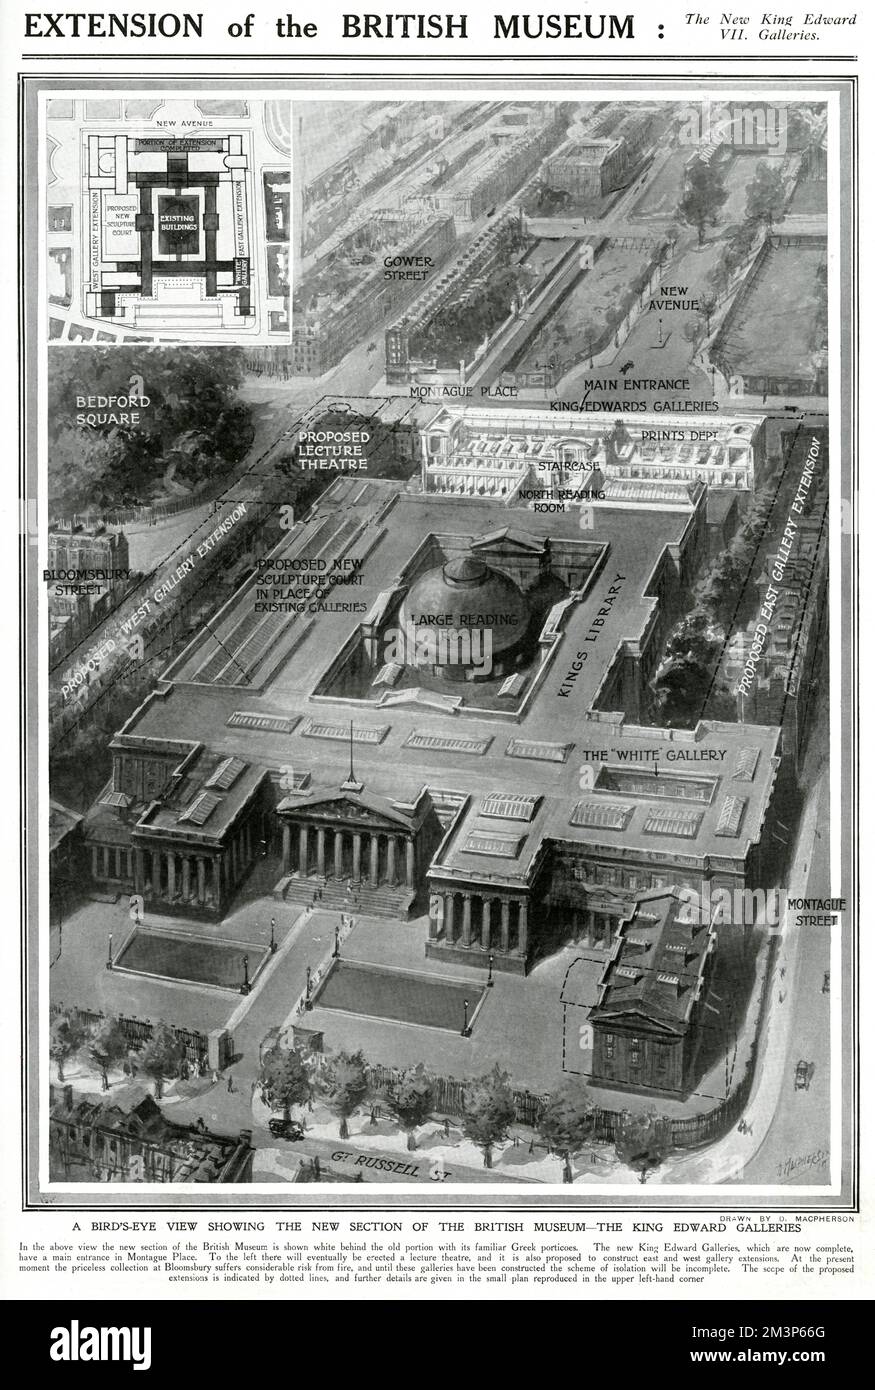 Erweiterung des Britischen Museums in London: Die neuen King Edward VII Galleries. Eine Vogelperspektive, die den neuen Gebäudeabschnitt zeigt. Stockfoto